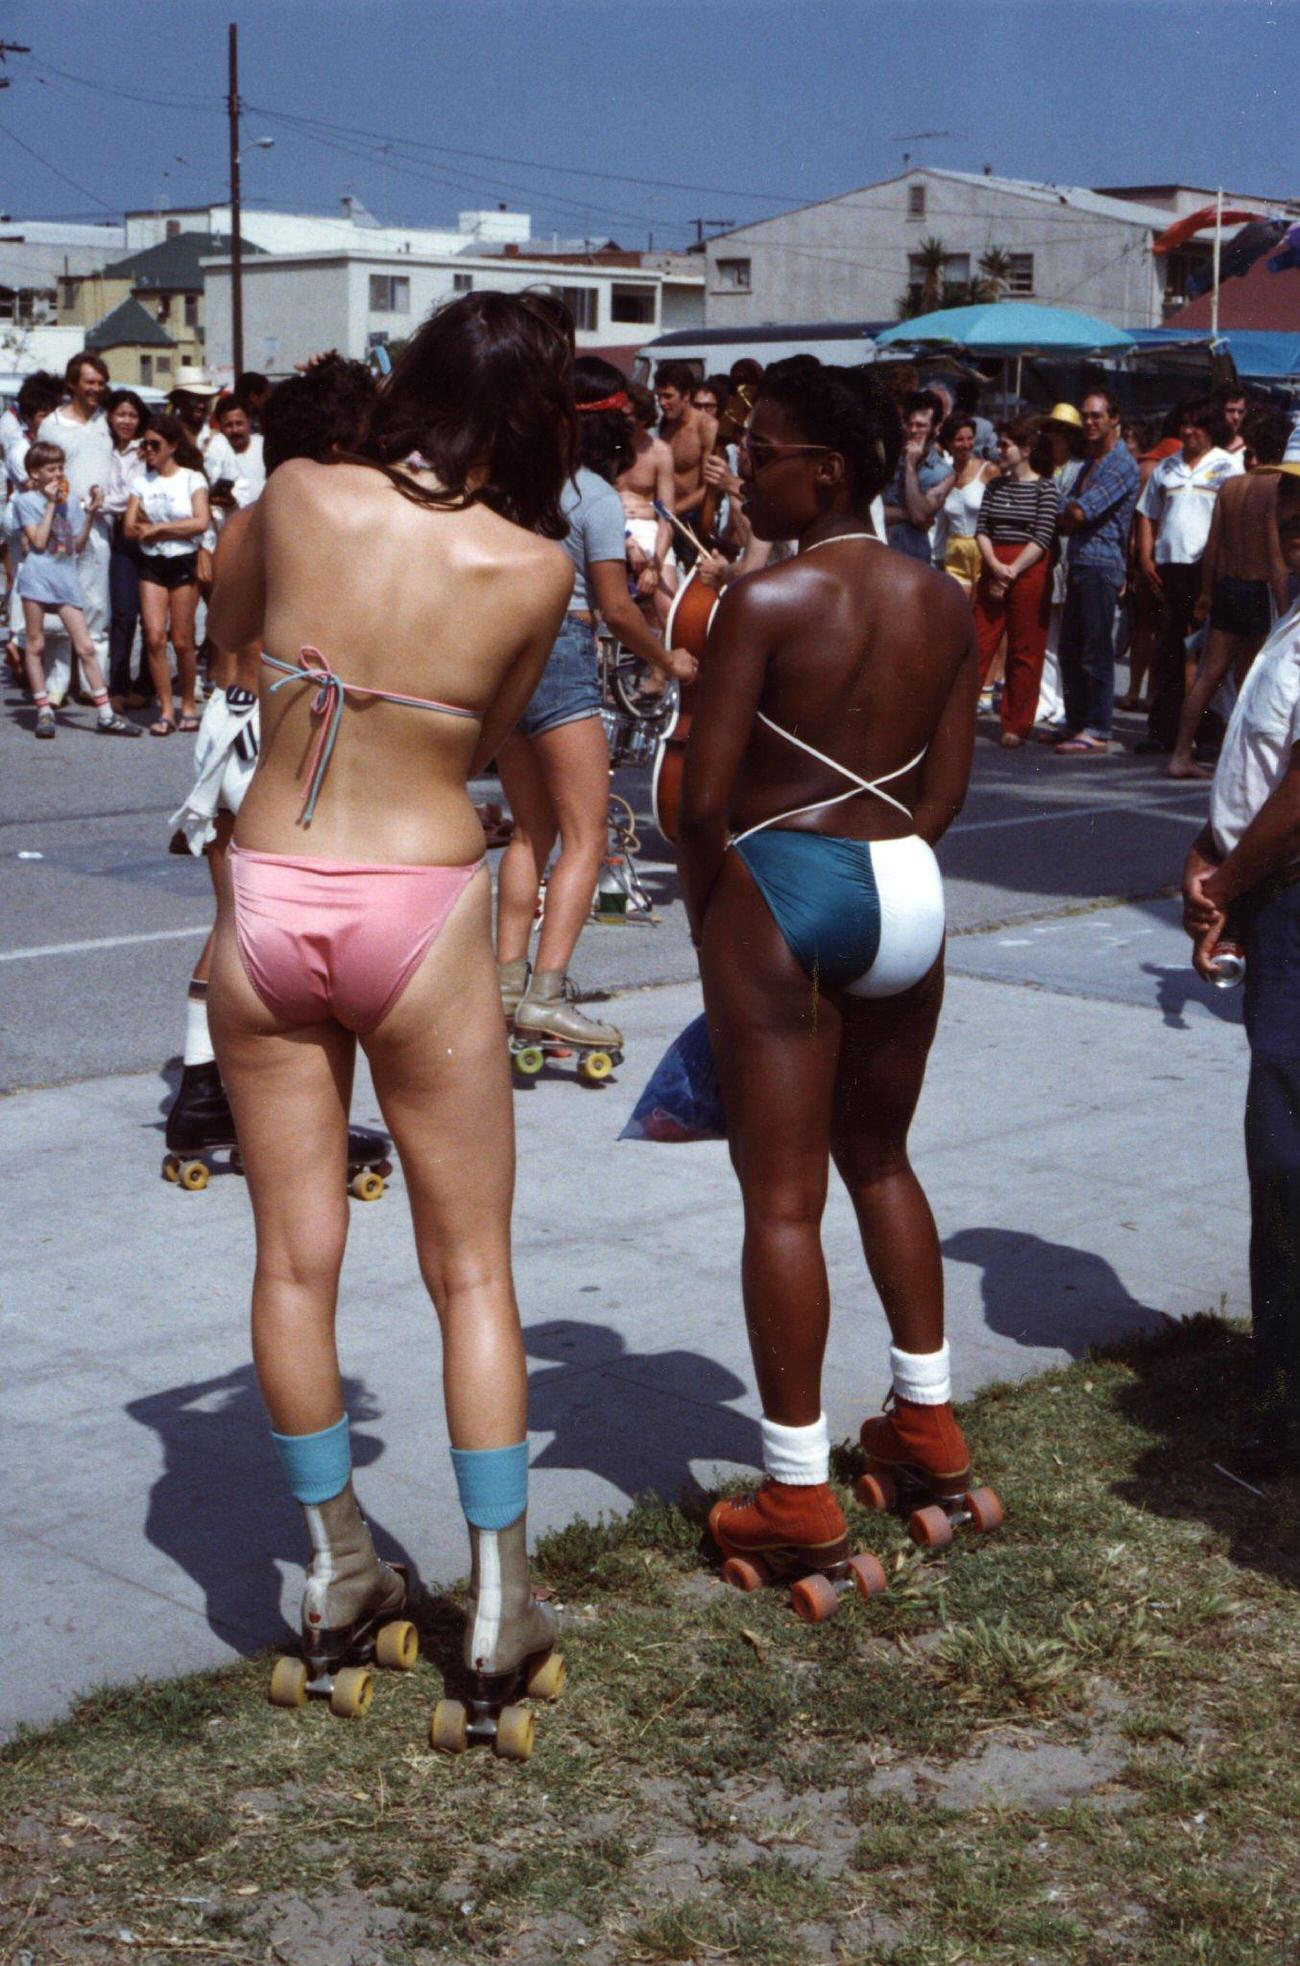 Women in Bikinis on Roller Skates, 1980